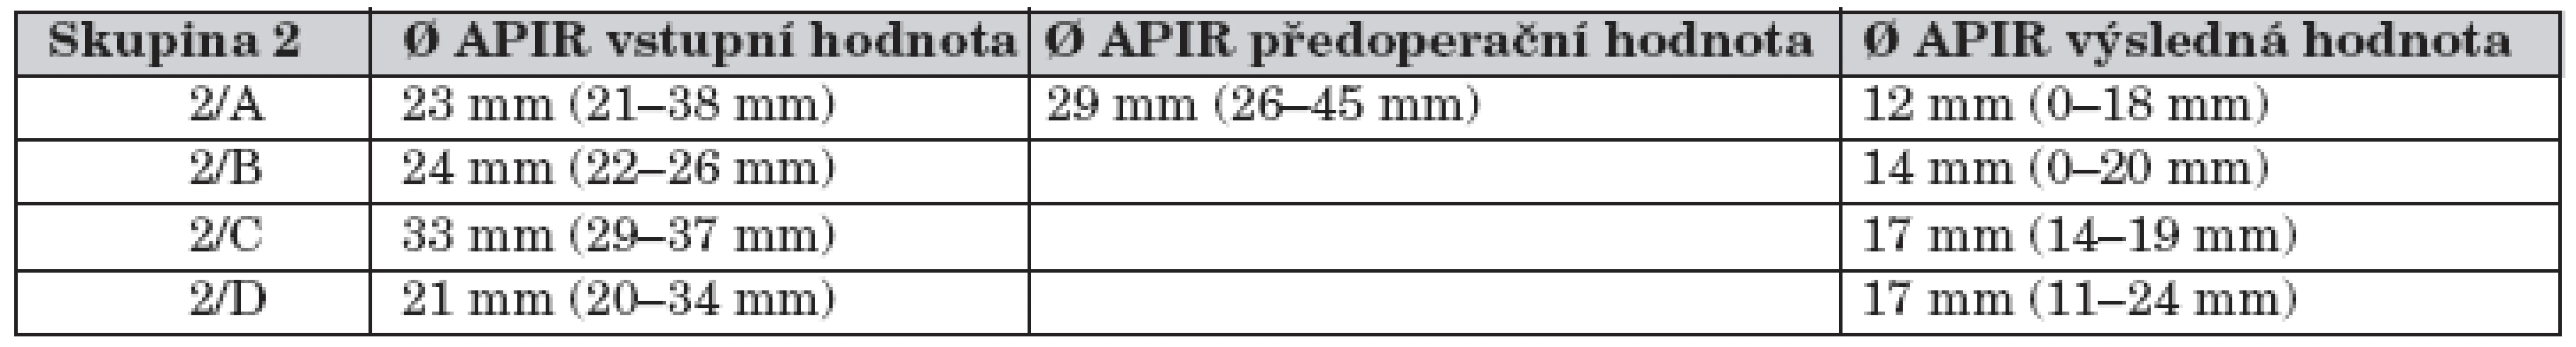 Vývoj dilatace KPS u dětí s pokročilou hydronefrózou (skupina 2).